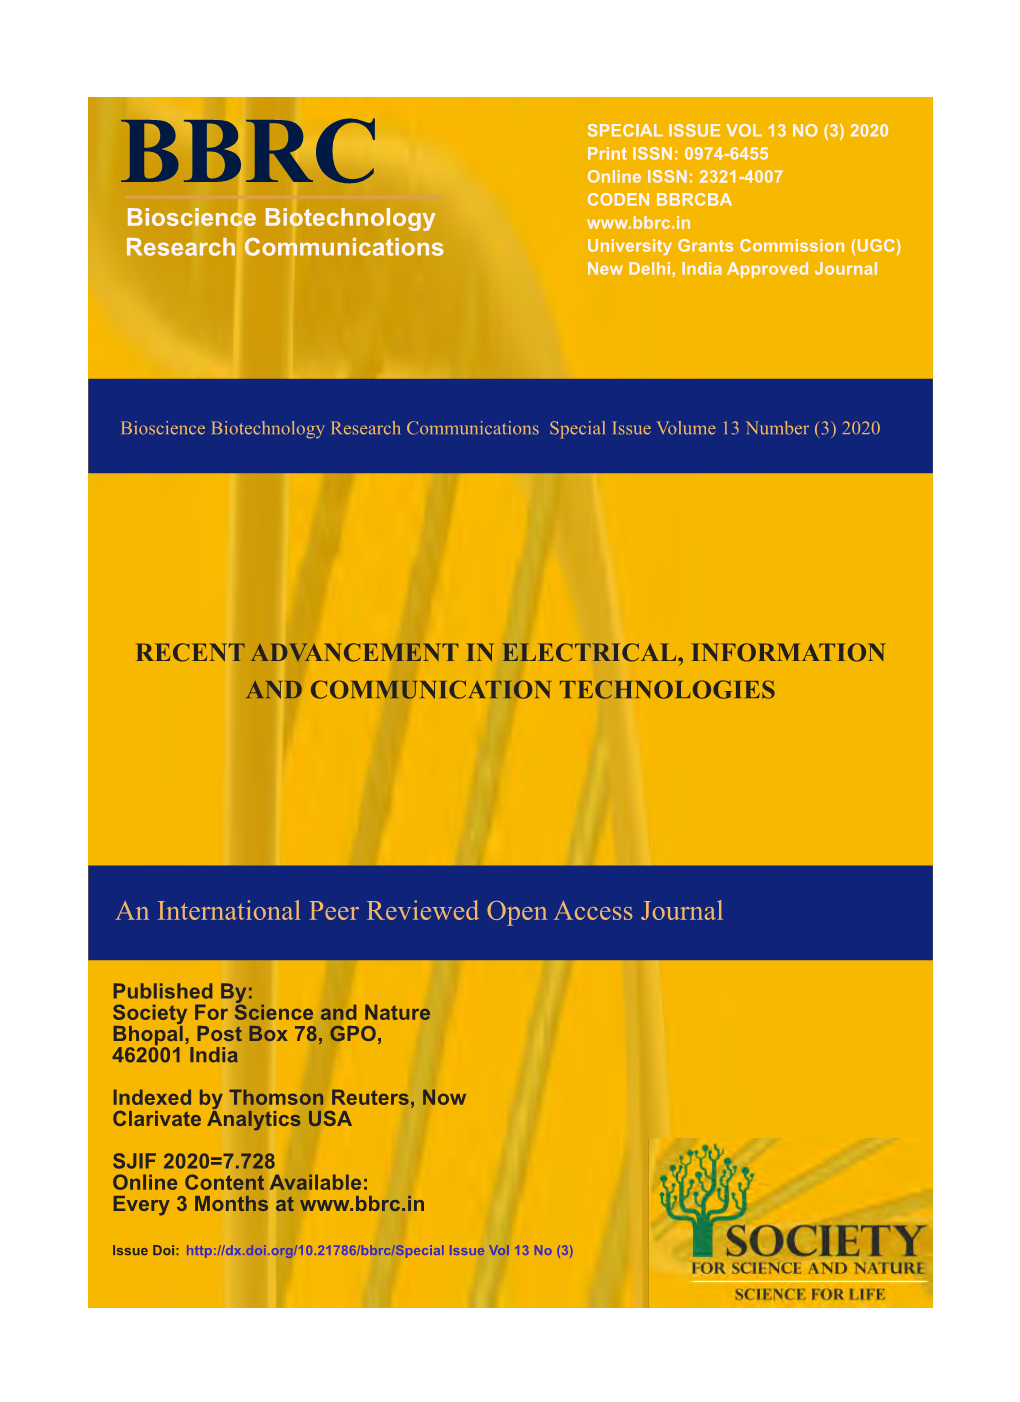 An International Peer Reviewed Open Access Journal